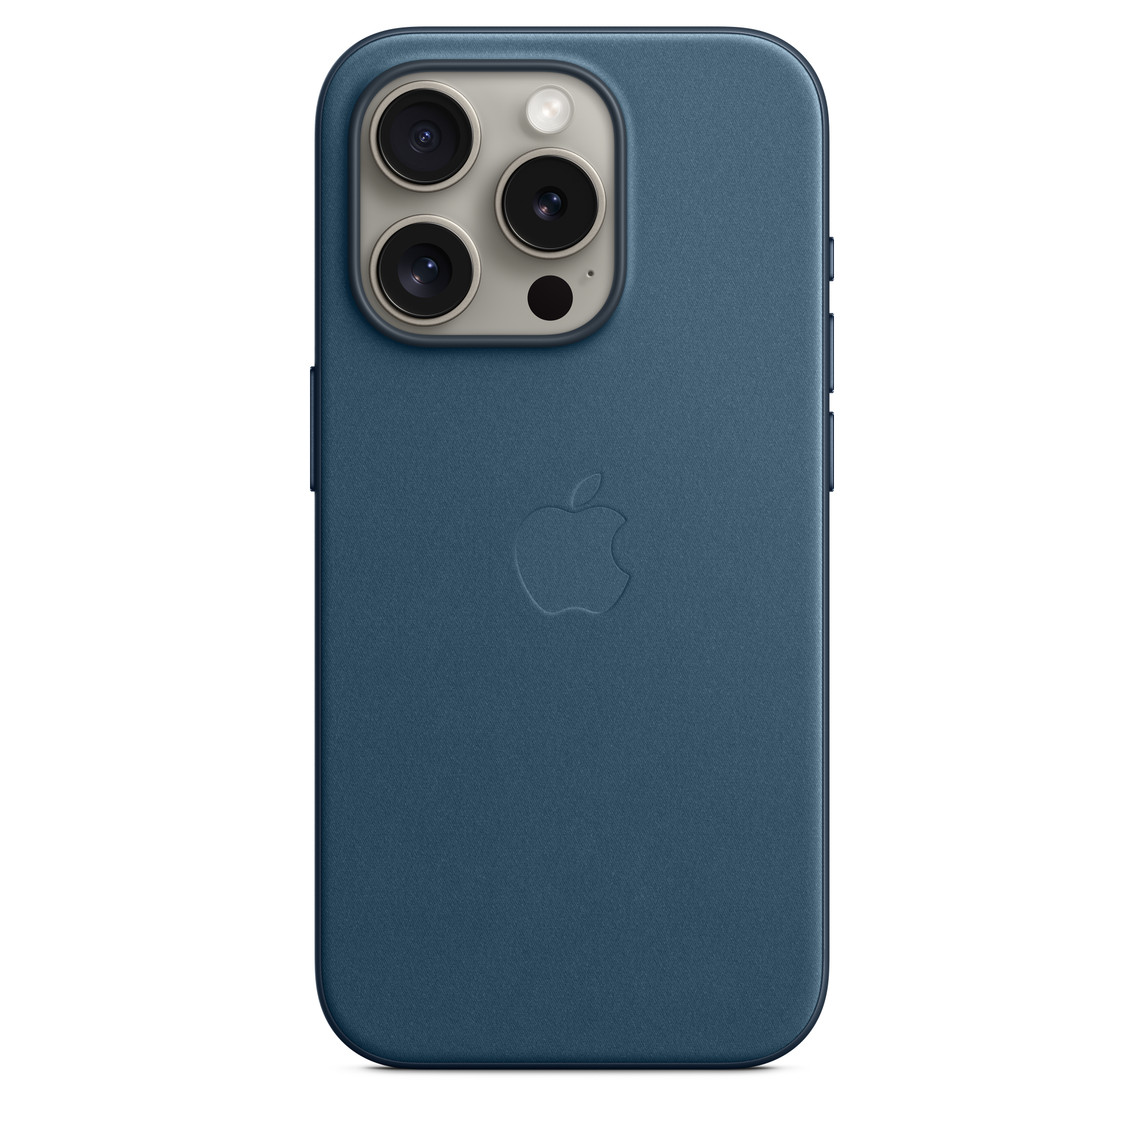 Ốp Lưng Vải Tinh Dệt MagSafe màu Xanh Thái Bình Dương cho iPhone 15 Pro, có logo Apple ở giữa, gắn với iPhone 15 Pro Titan Tự Nhiên, nhìn qua lỗ khoét cho camera.
